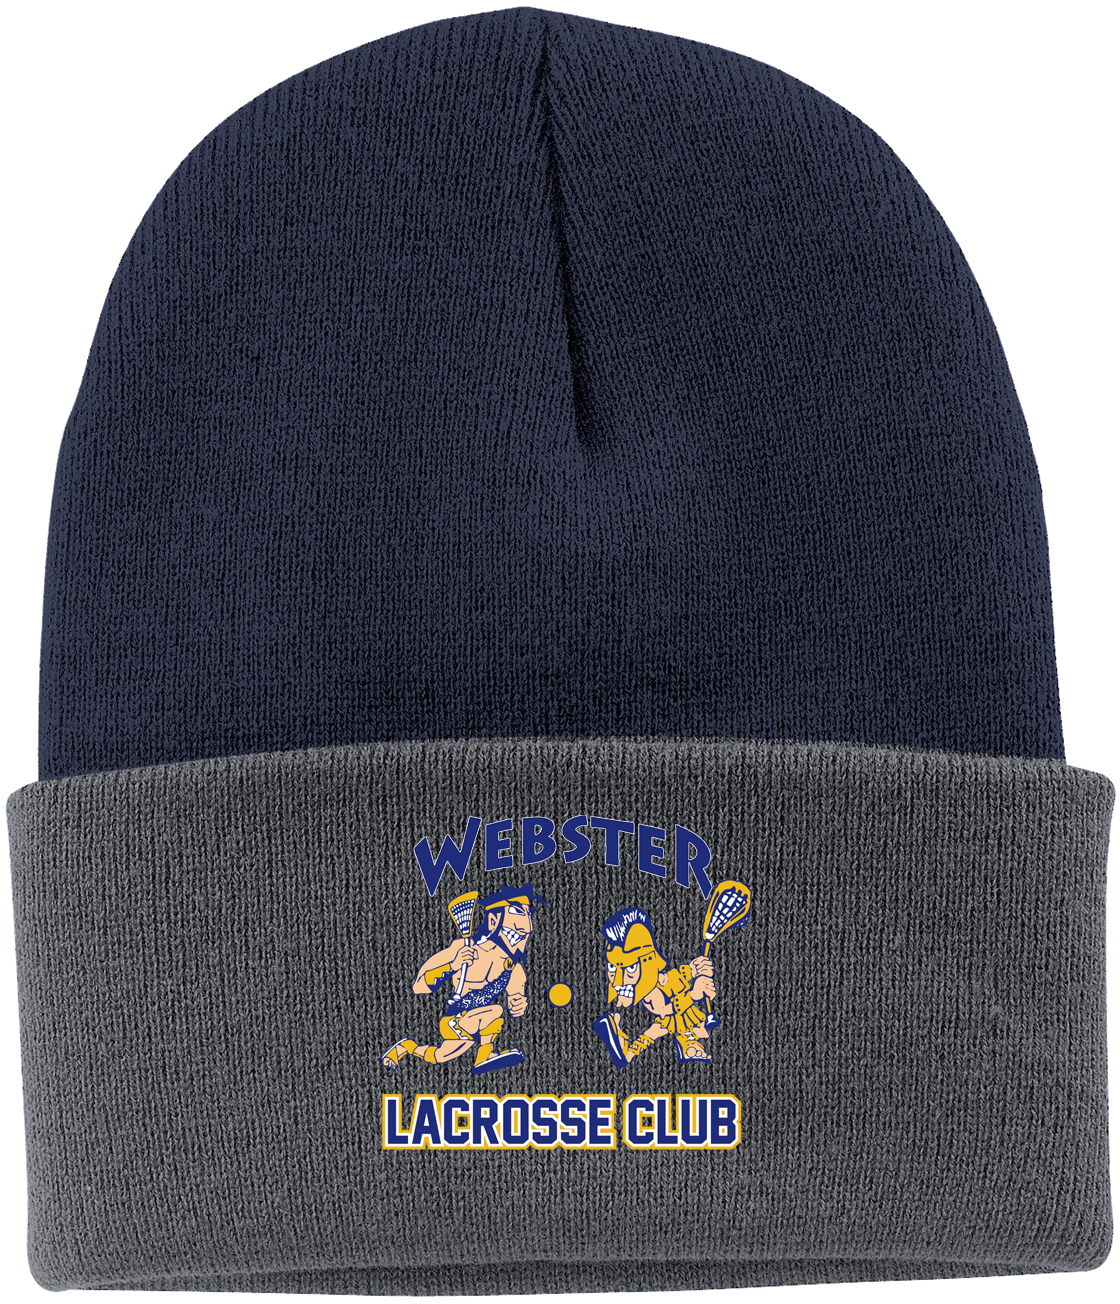 Webster Lacrosse Navy & Grey Knit Beanie